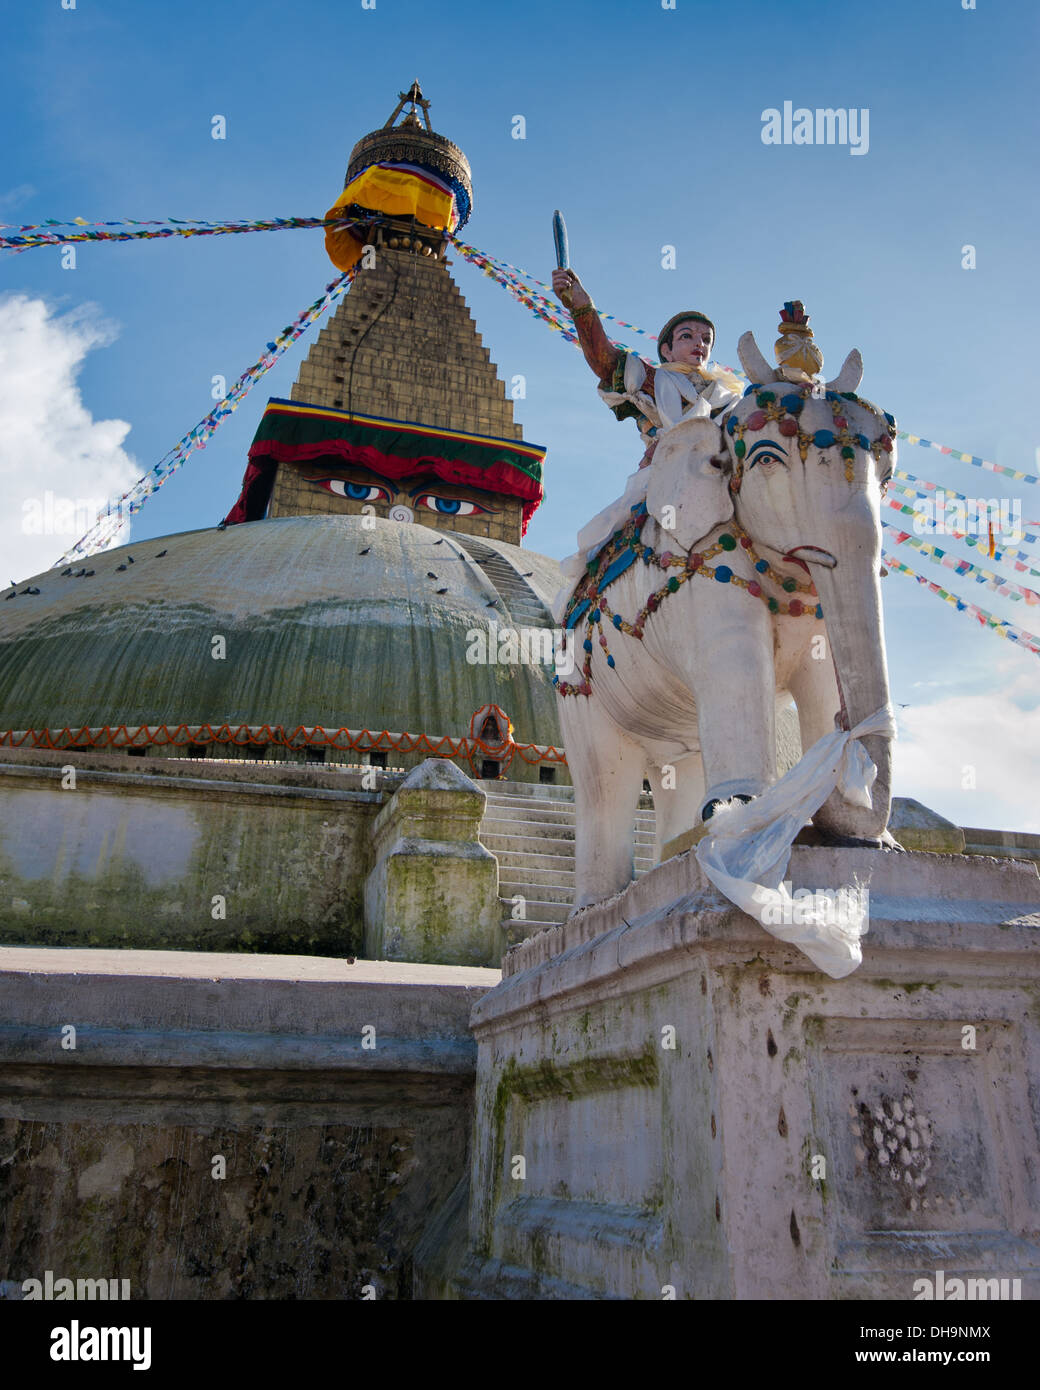 Sanctuaire bouddhiste Boudhanath Stupa avec prier flags en ciel bleu. Népal, Katmandou Banque D'Images